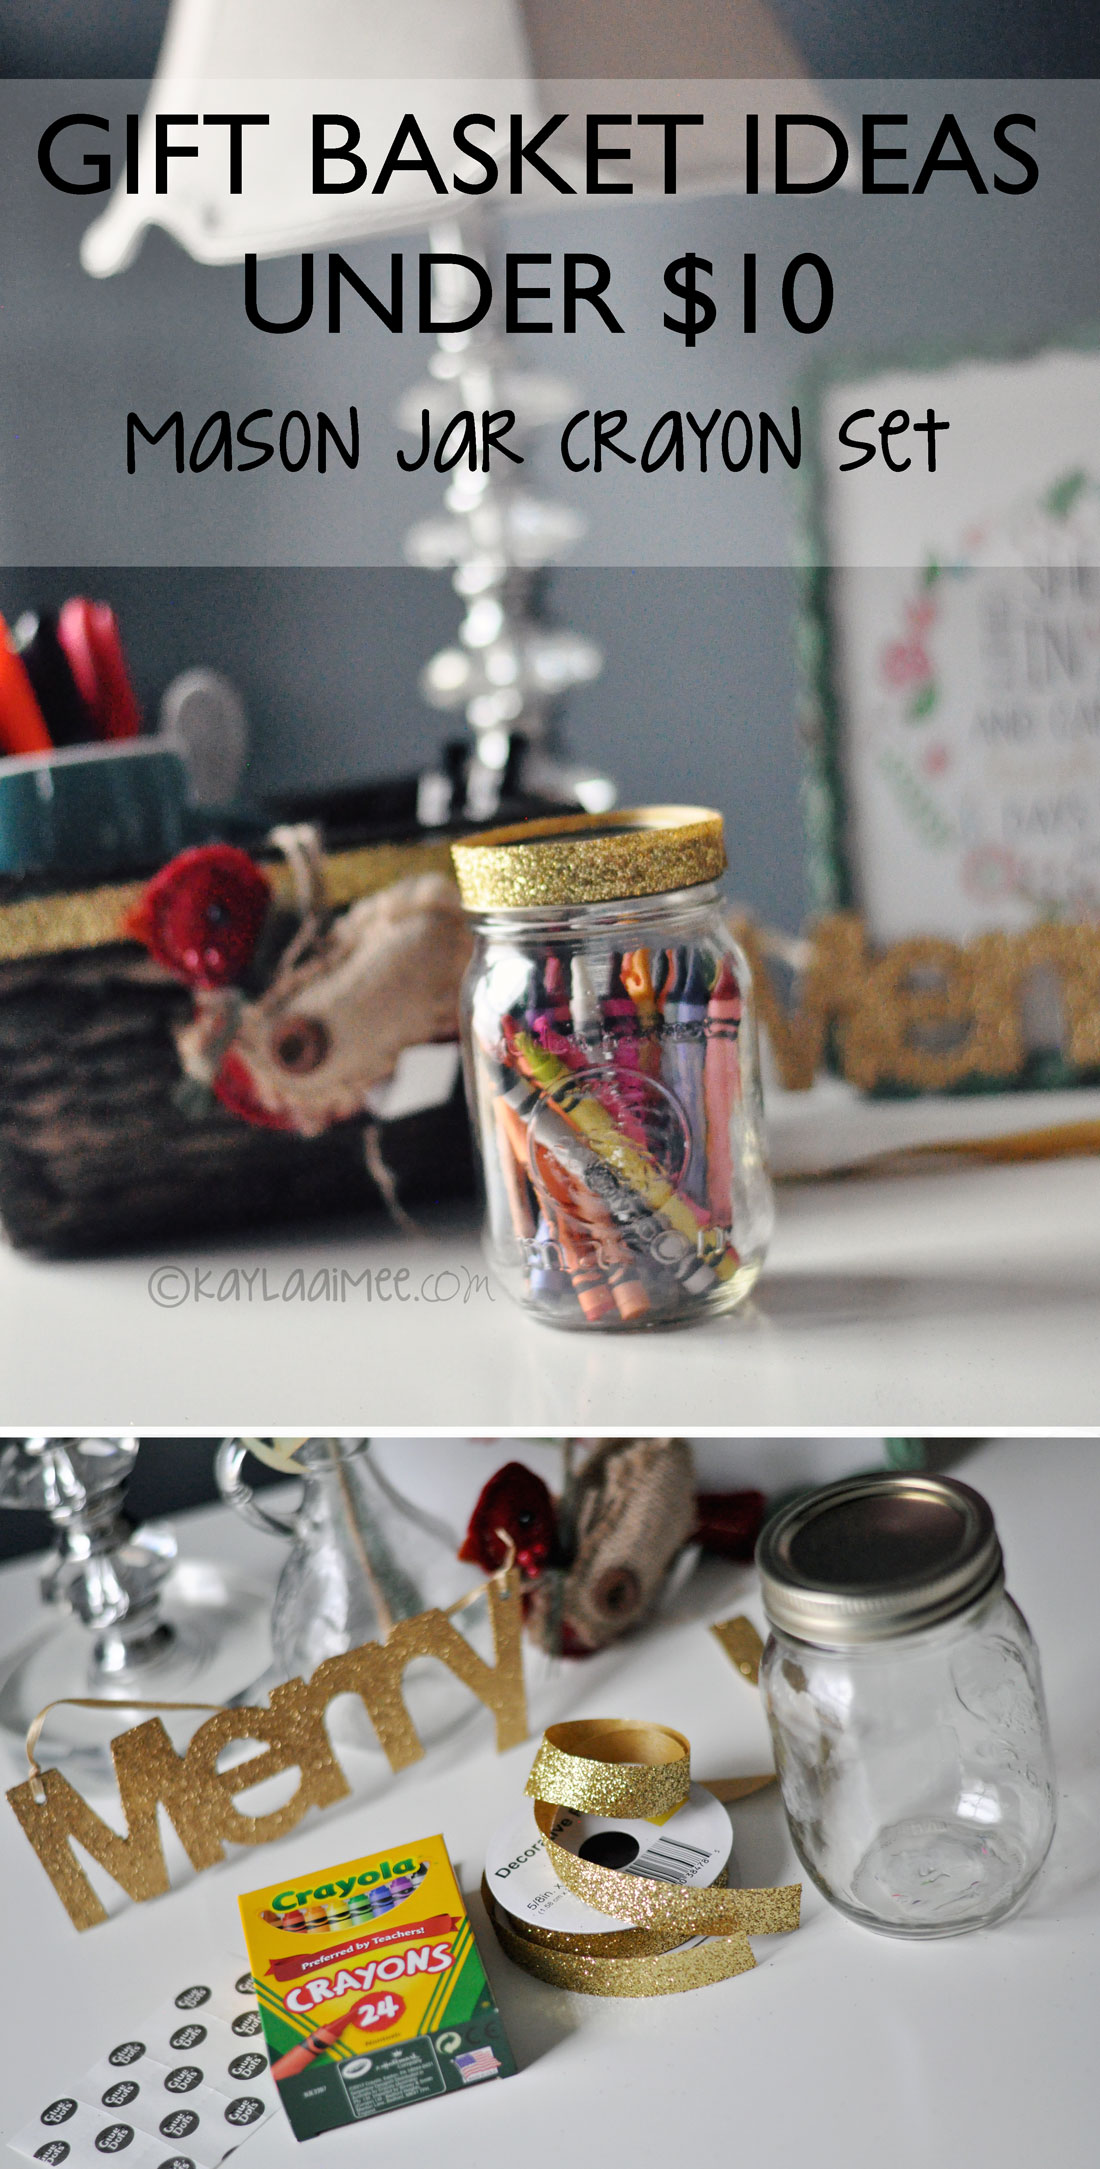 Cute Teacher Gift Idea - Mason Jar Crayons in Gift Basket!